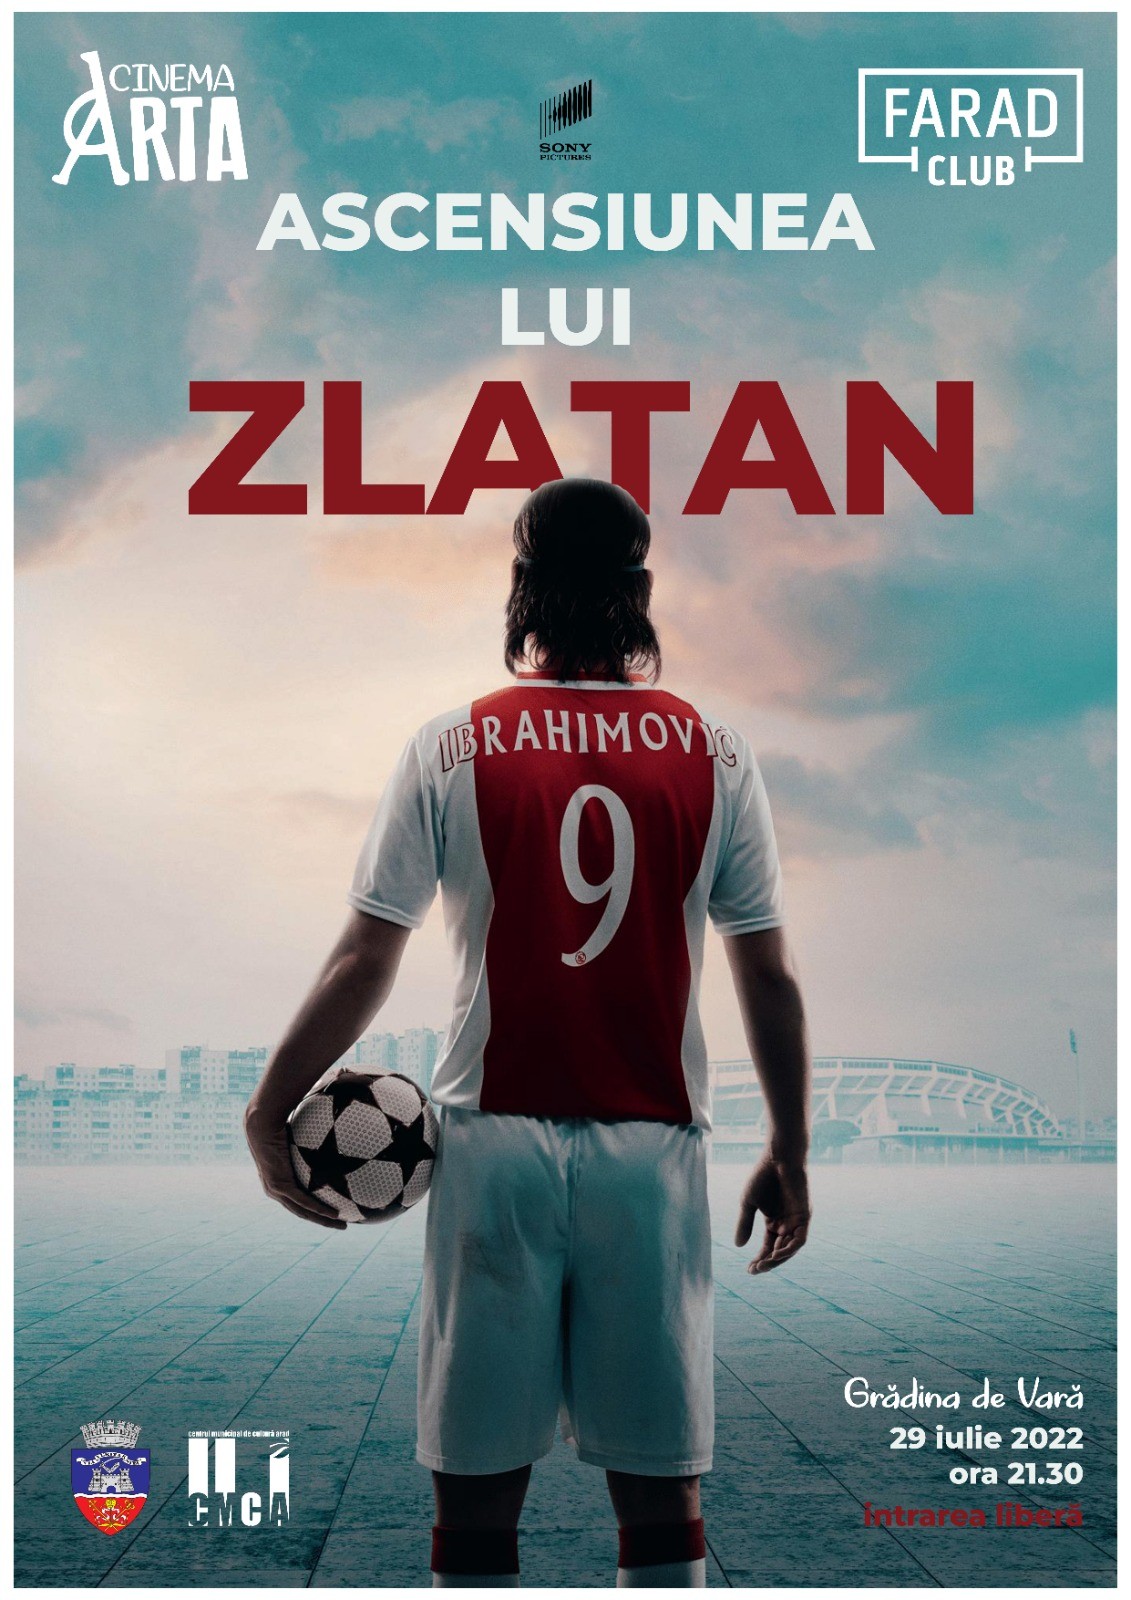 Ascensiunea lui Zlatan într-o nouă ediție a Club fARAD  în grădina de vară a Cinematografului „Arta“